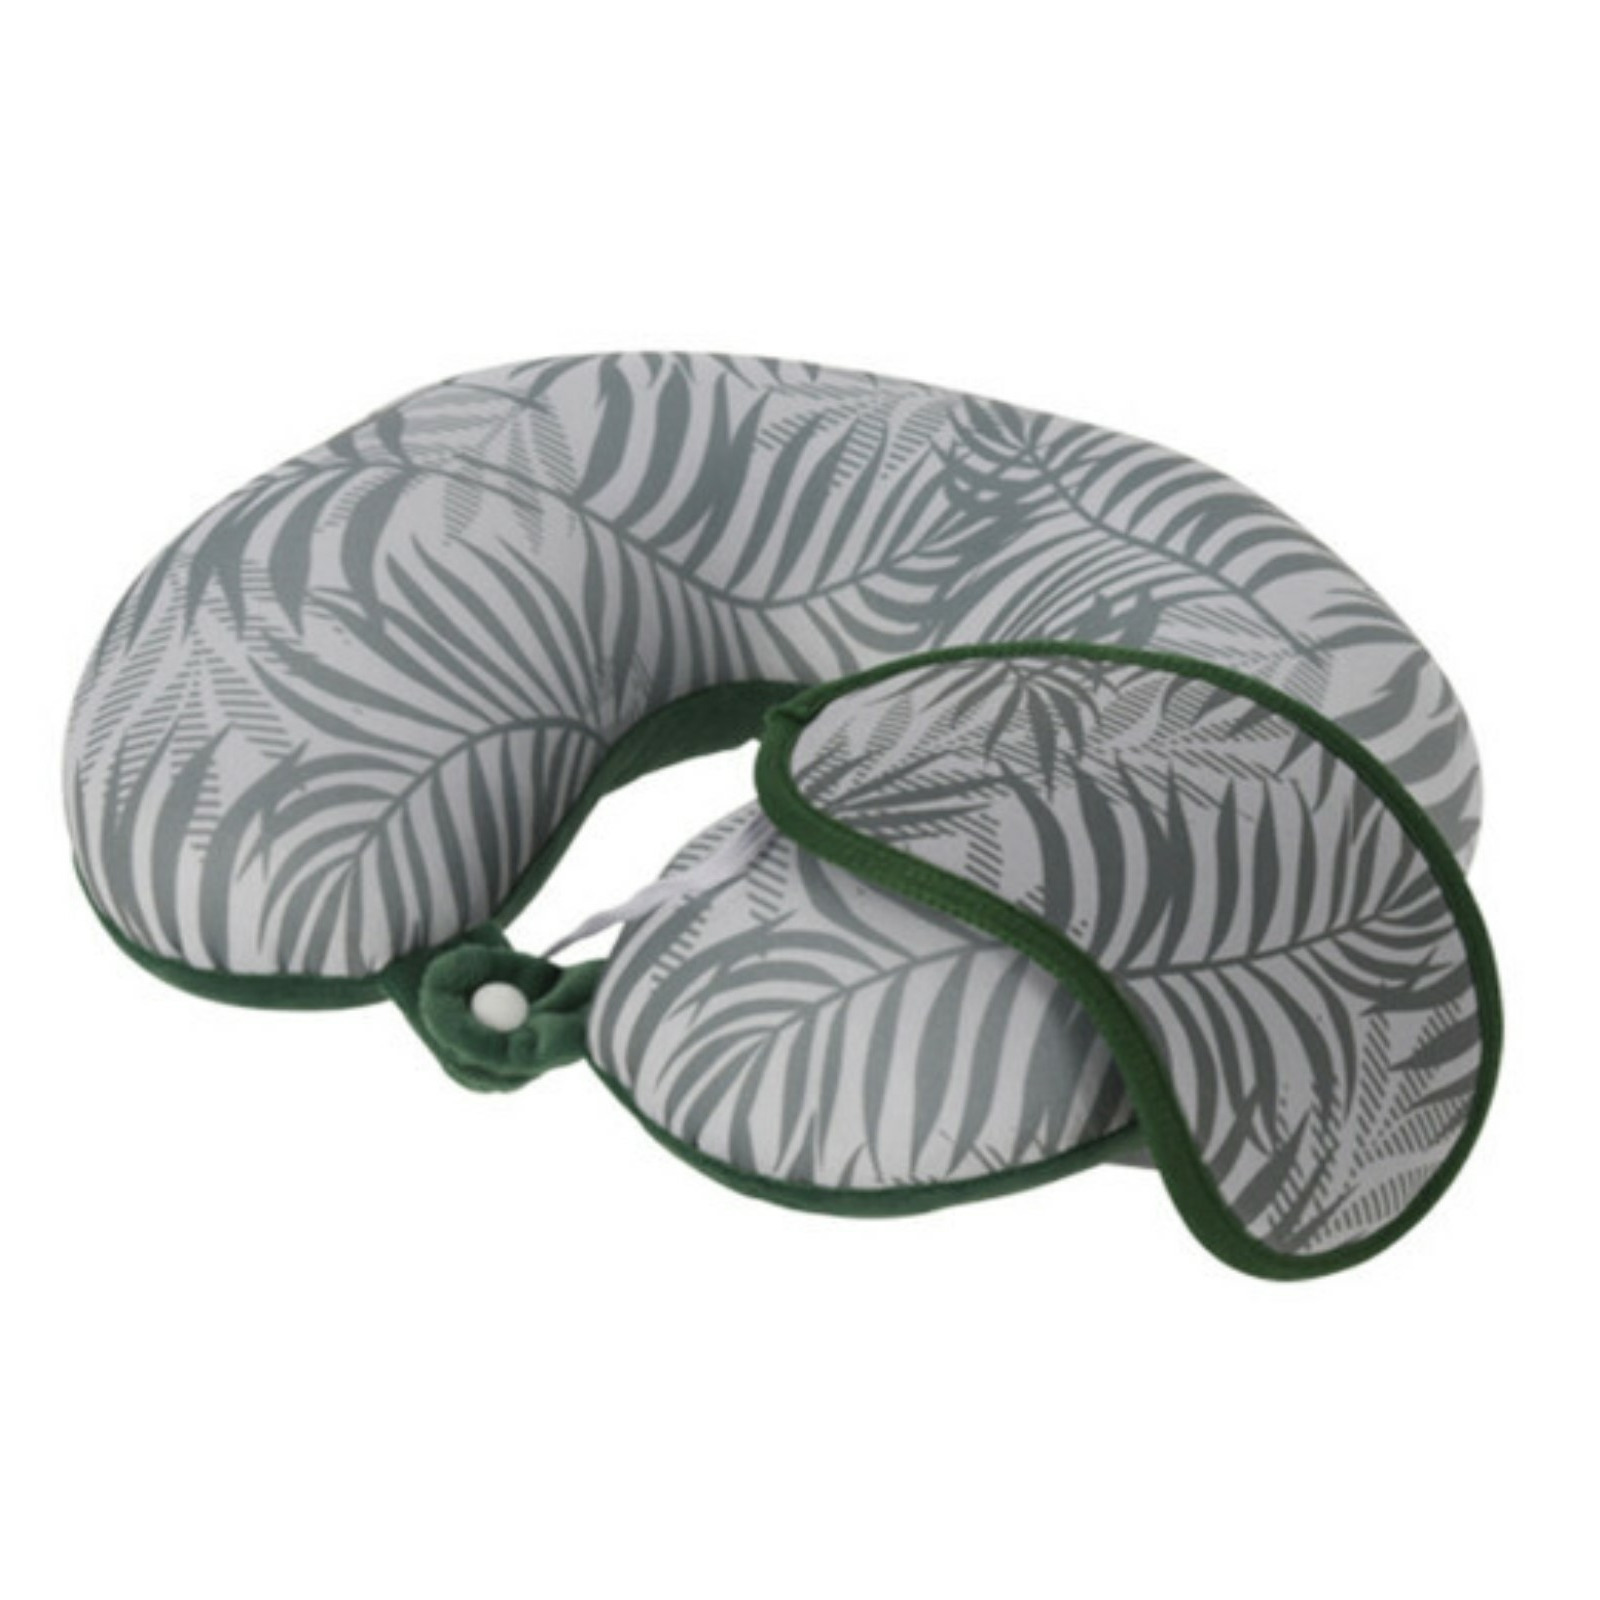 Reis kussen-nek kussen met slaapmasker-oogmasker groen 29 cm